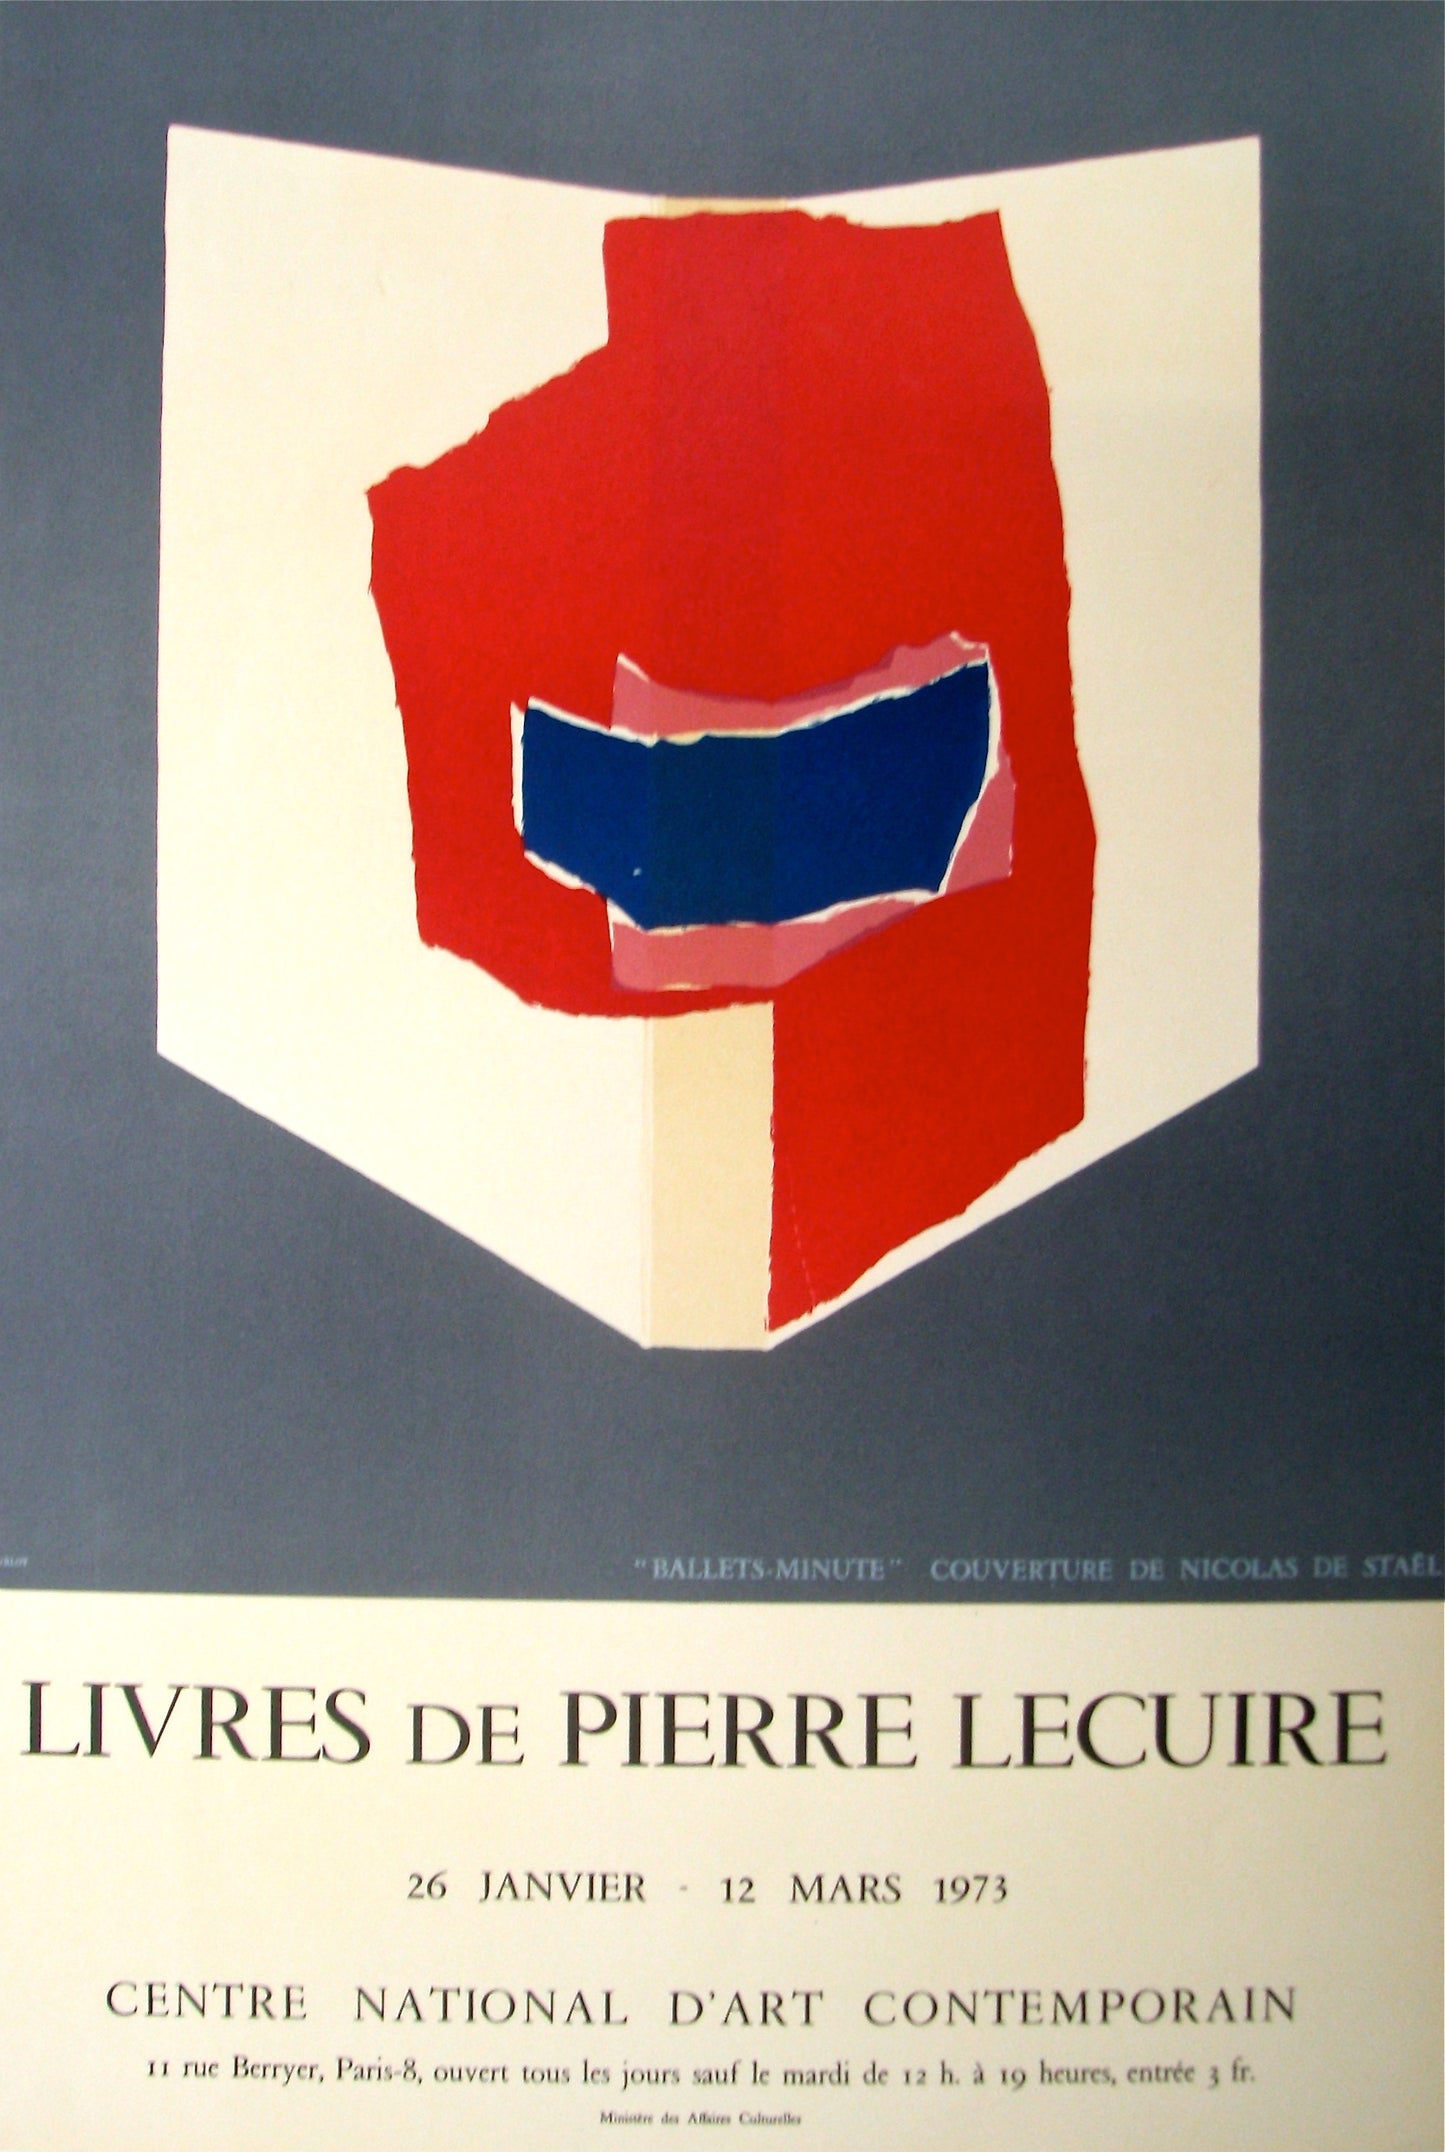 "Livres de Pierre Lecuire" (after) Nicolas De Stael, 1973 - Mourlot Editions - Fine_Art - Poster - Lithograph - Wall Art - Vintage - Prints - Original